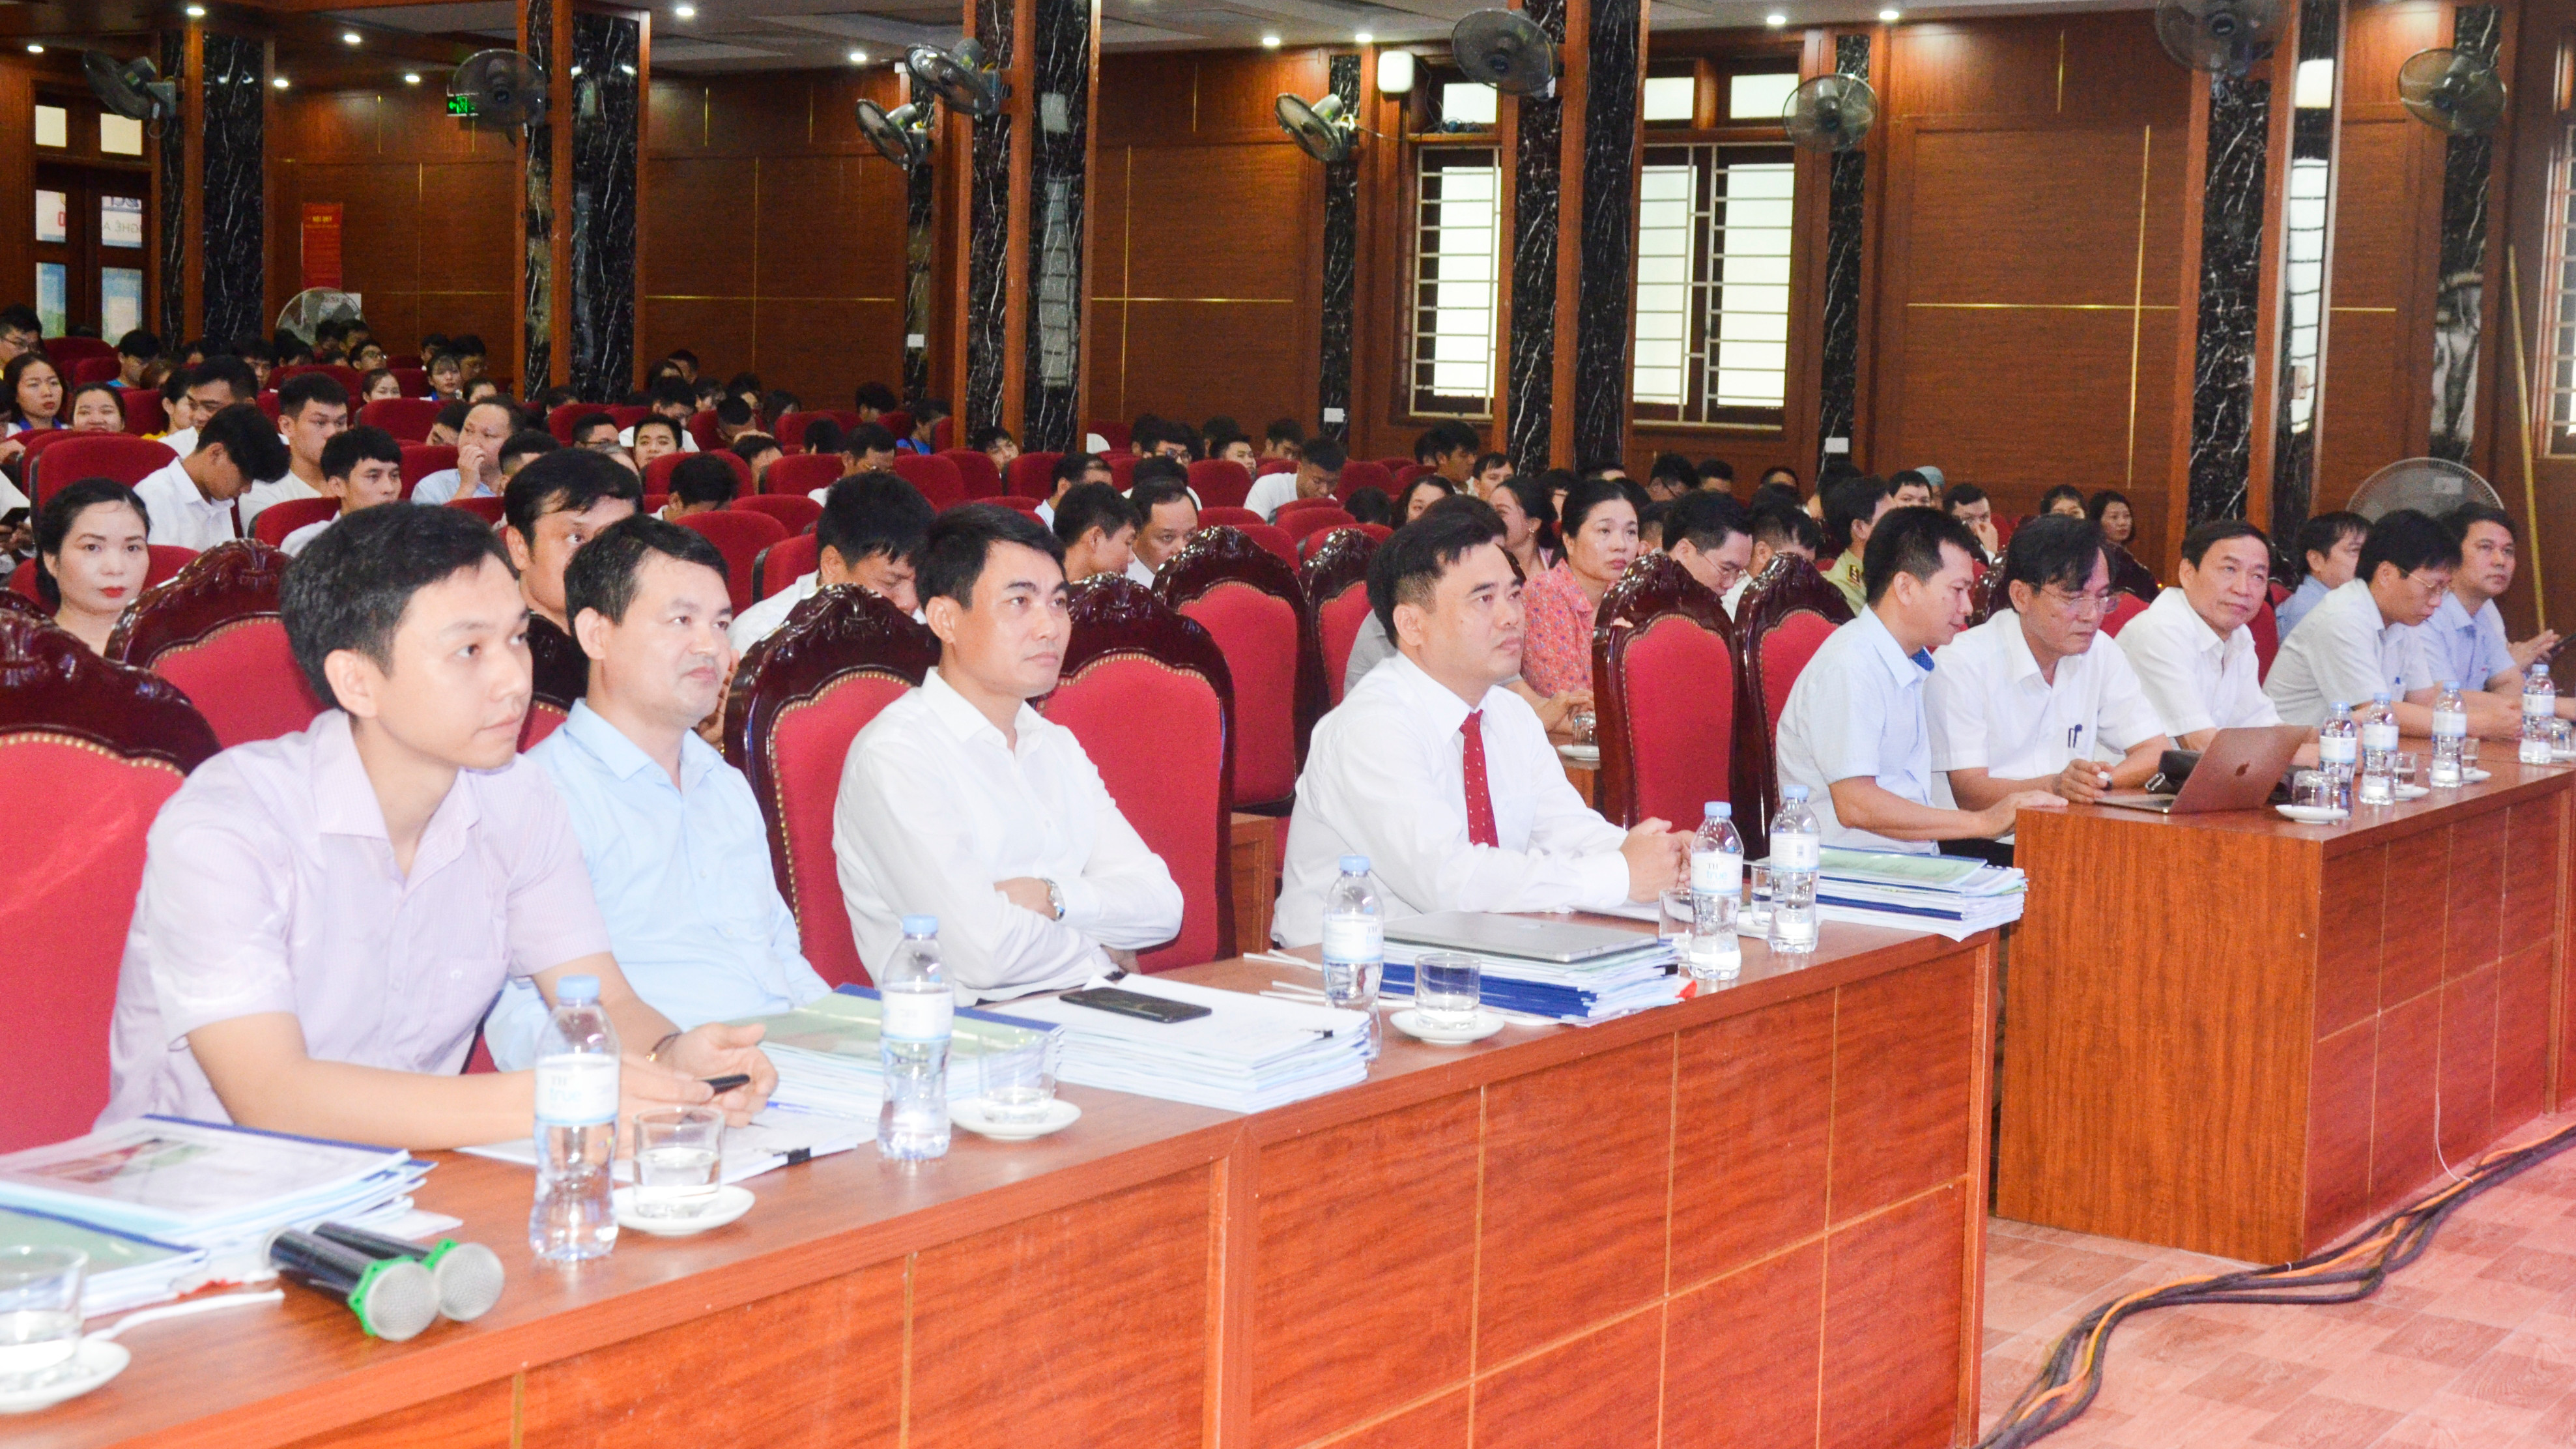 Dự chương trình có đồng chí Trần Quốc Thành - Ủy viên Ban chấp hành Đảng  bộ tỉnh, Giám đốc Sở Khoa học và công nghệ; đại diện lãnh đạo các sở, banm ngành.